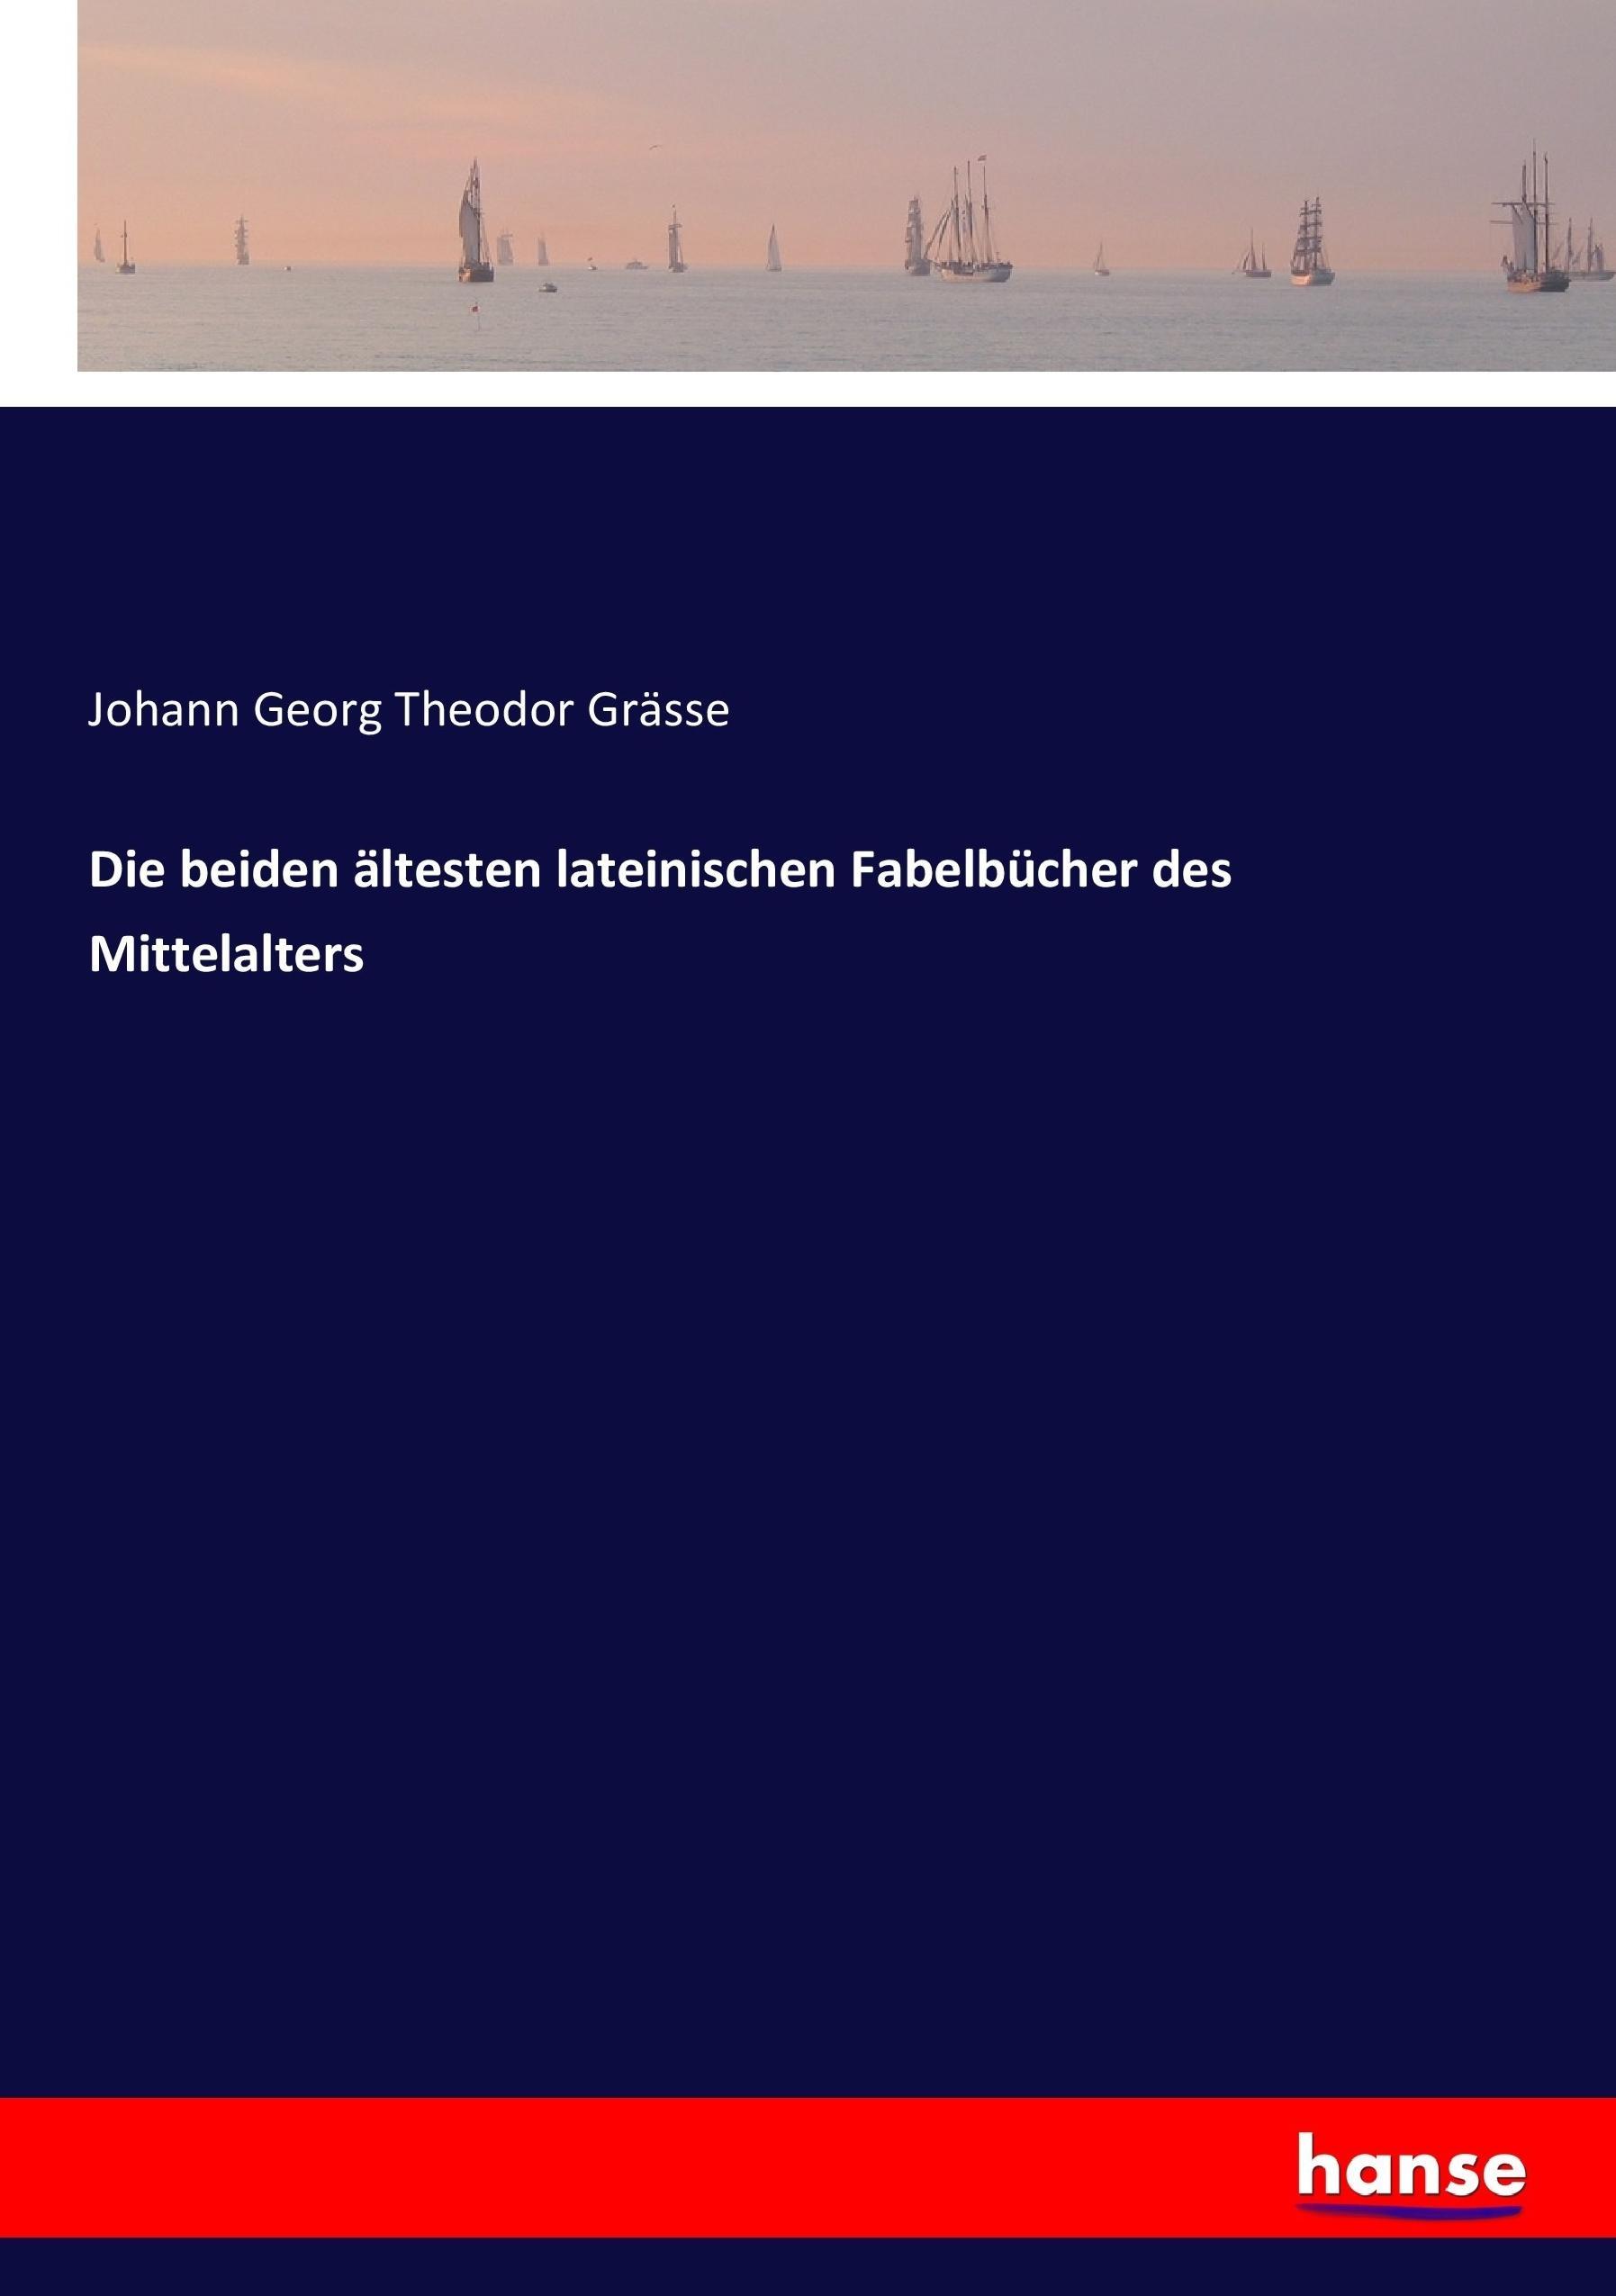 Die beiden aeltesten lateinischen Fabelbuecher des Mittelalters - Graesse, Johann Georg Theodor